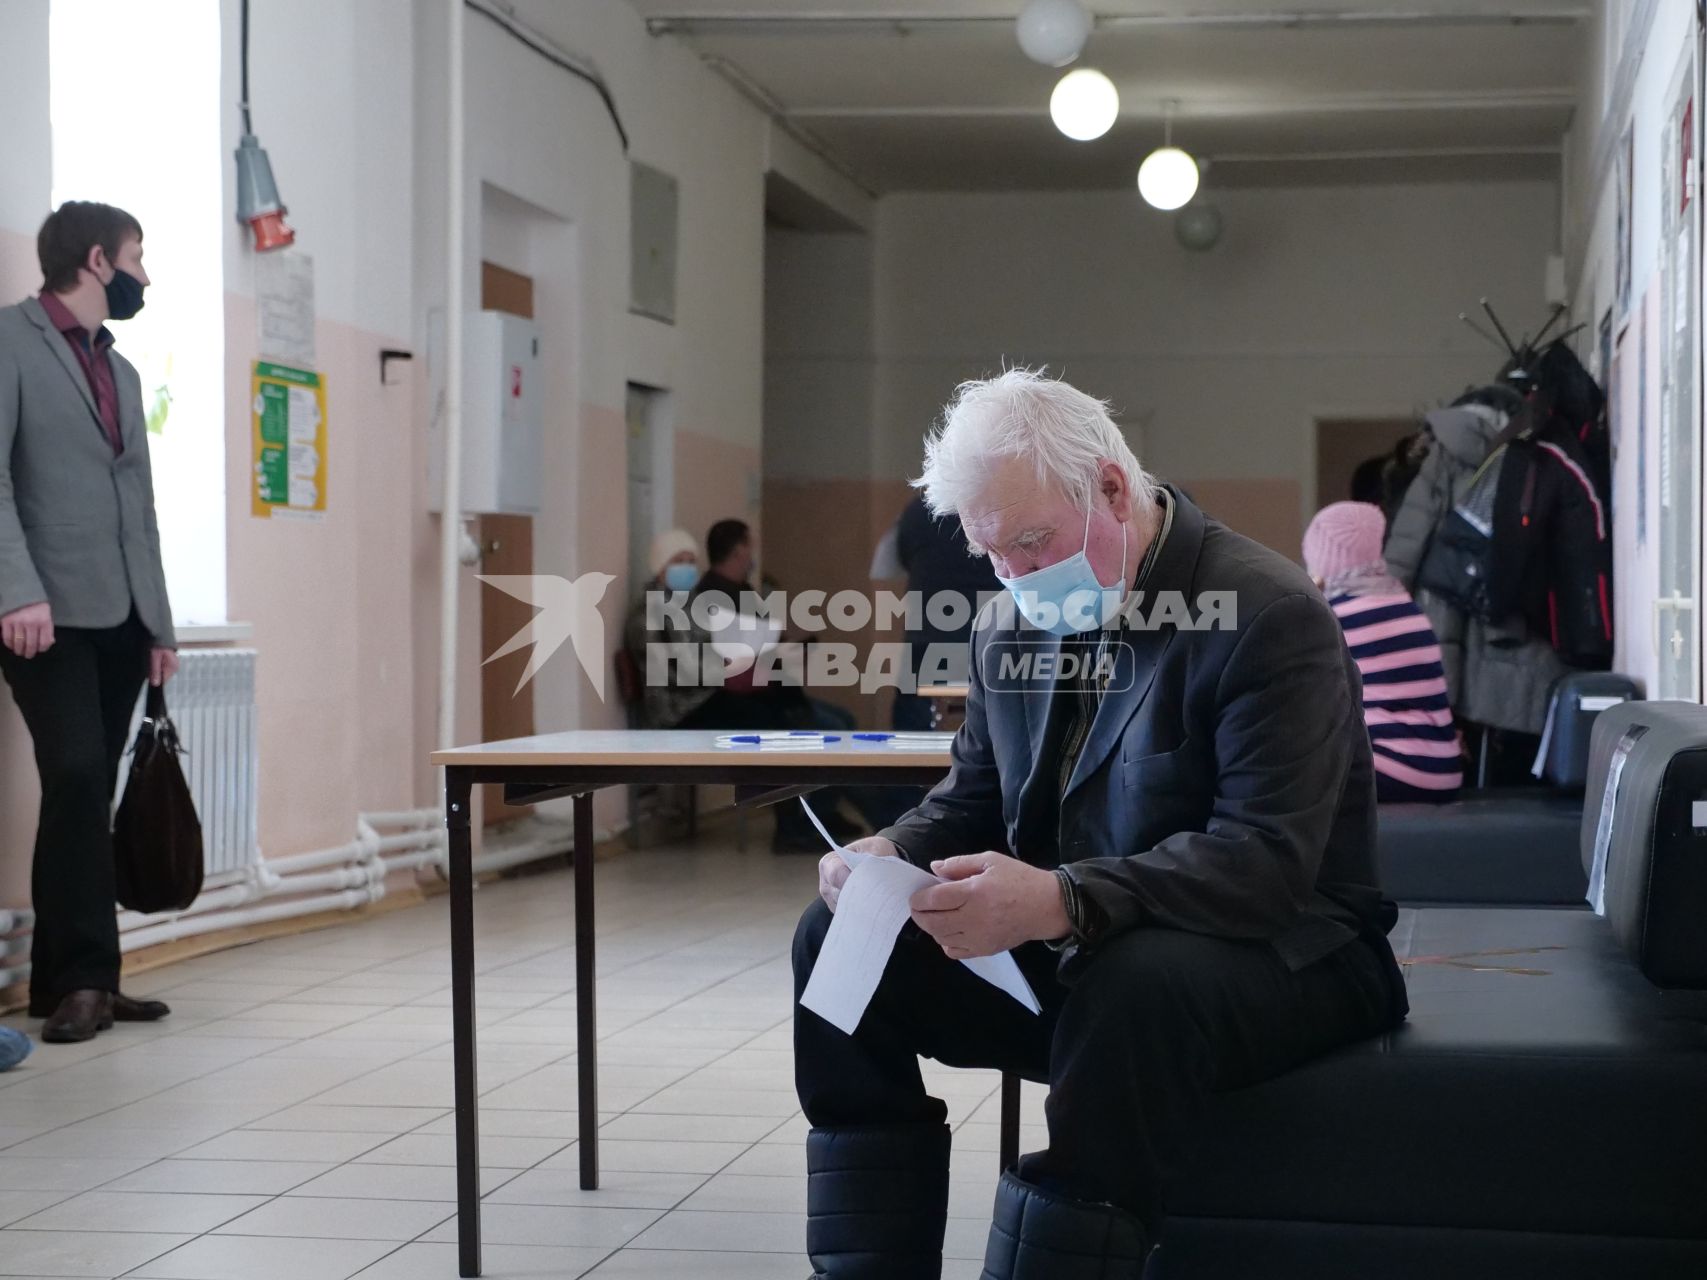 Самарская область, с. Рождествено. Мужчина заполняет документы  перед вакцинацией от коронавирусной инфекции в поликлинике.